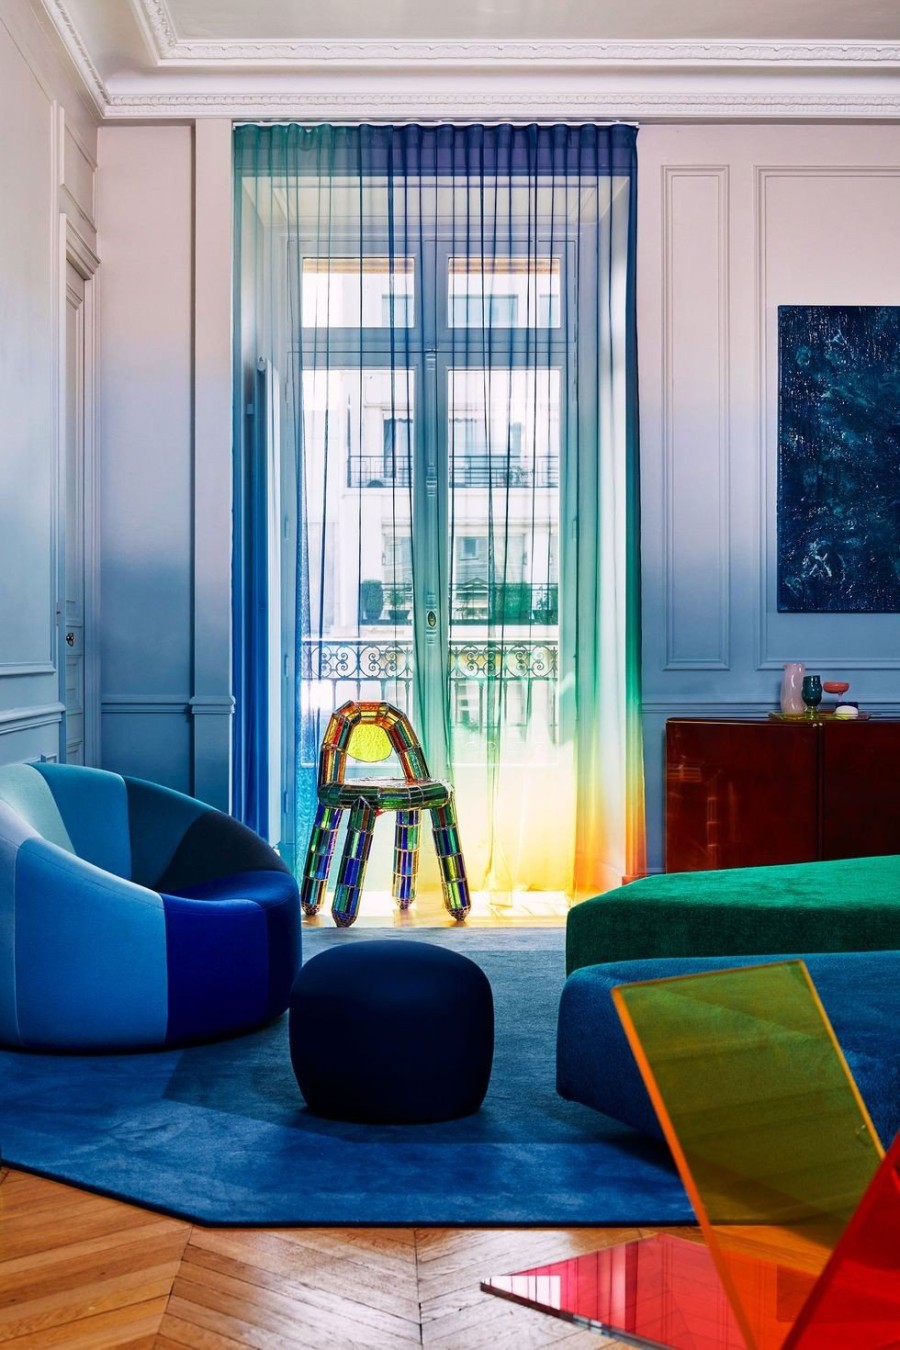 Σε ένα παριζιάνικο διαμέρισμα η κλασική Haussmannian αρχιτεκτονική κάνει εκκεντρικά παιχνίδια με τα χρώματα - Φωτογραφία 3